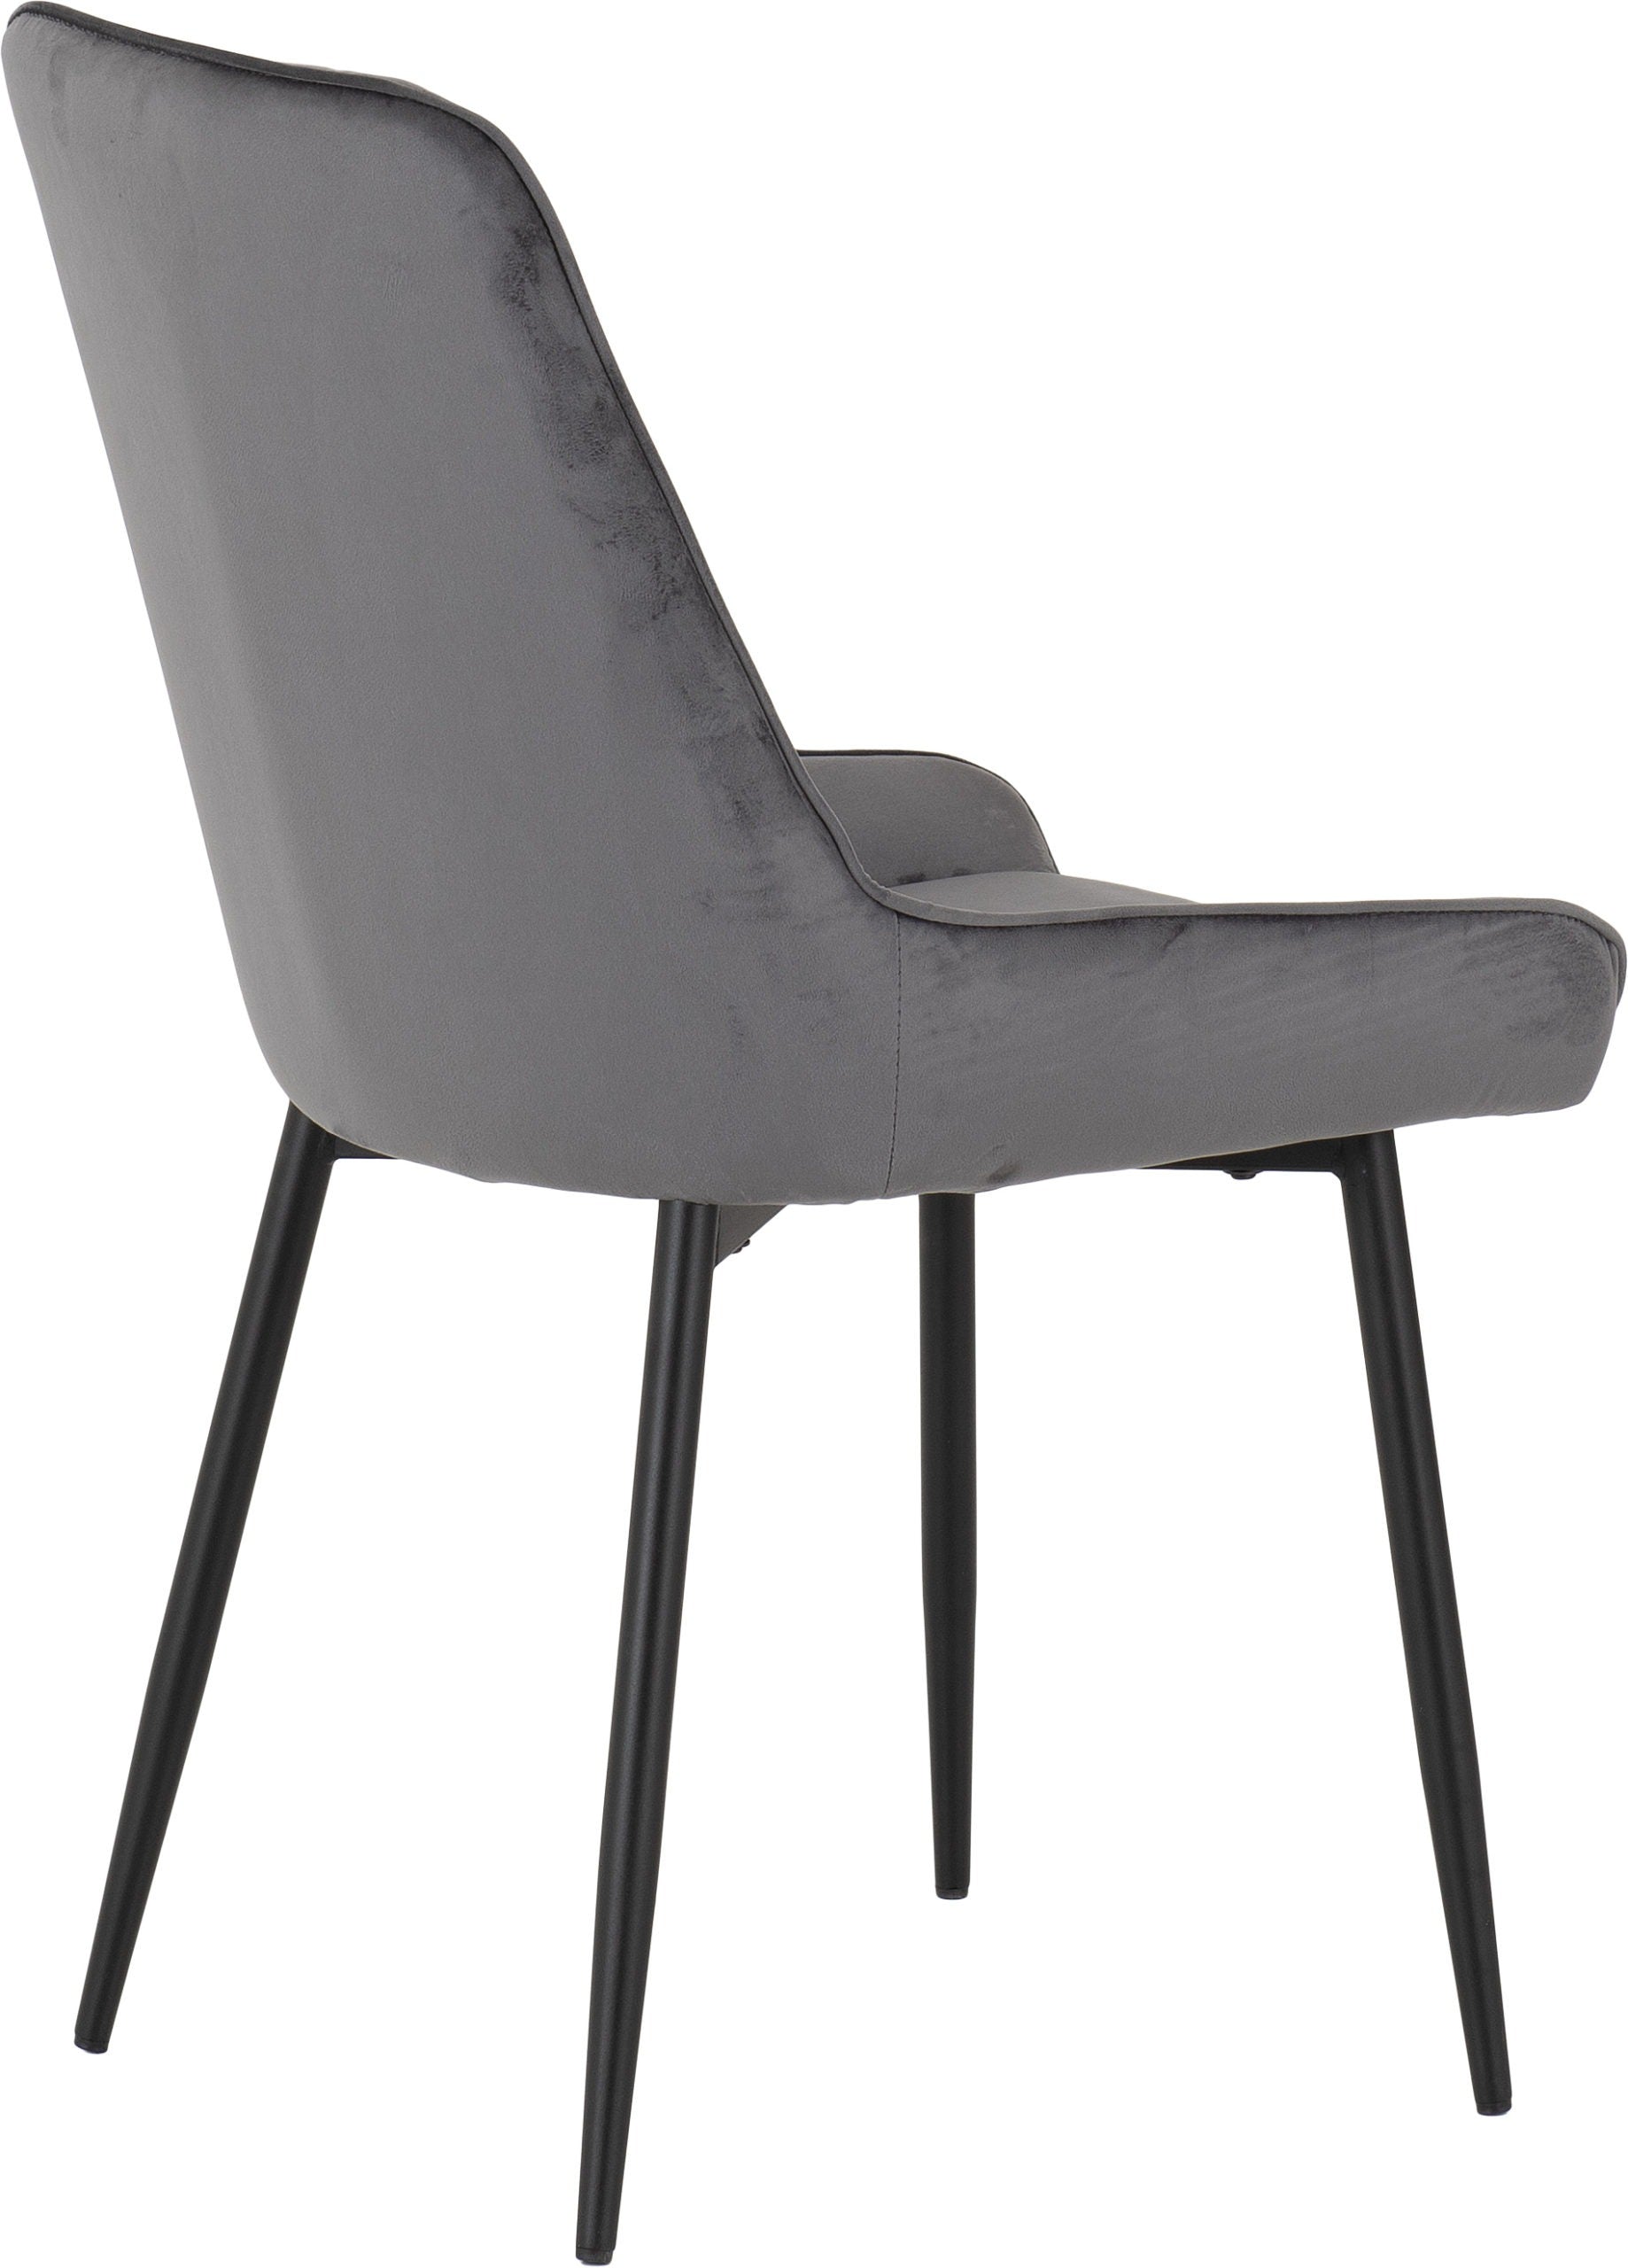 Avery Chair Black/Grey Velvet- The Right Buy Store